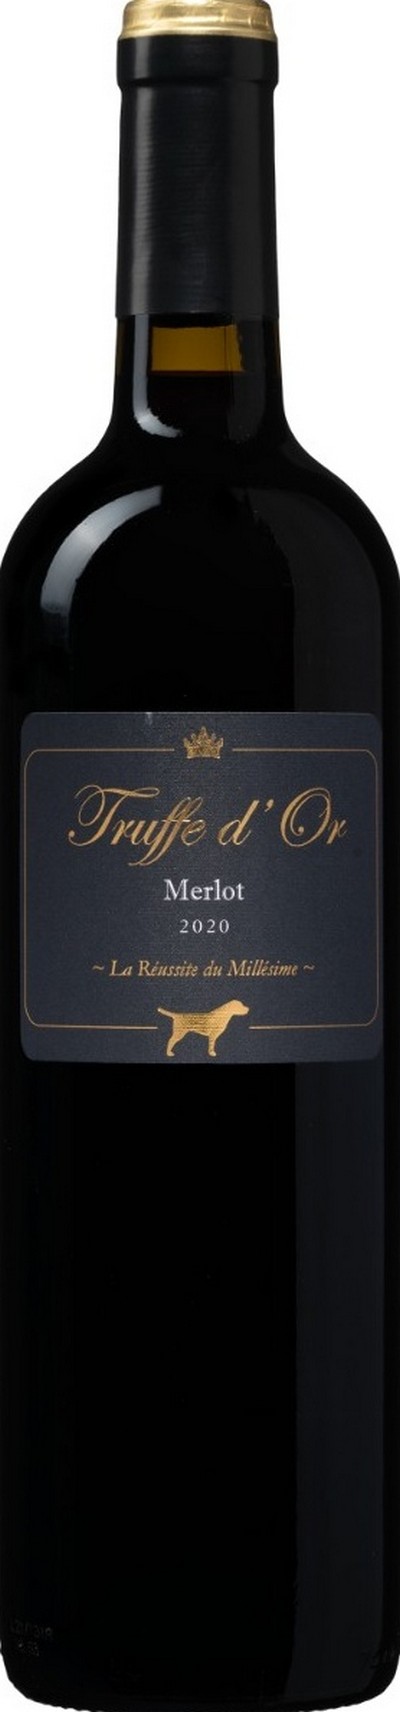 truffe-dor-merlot-2020